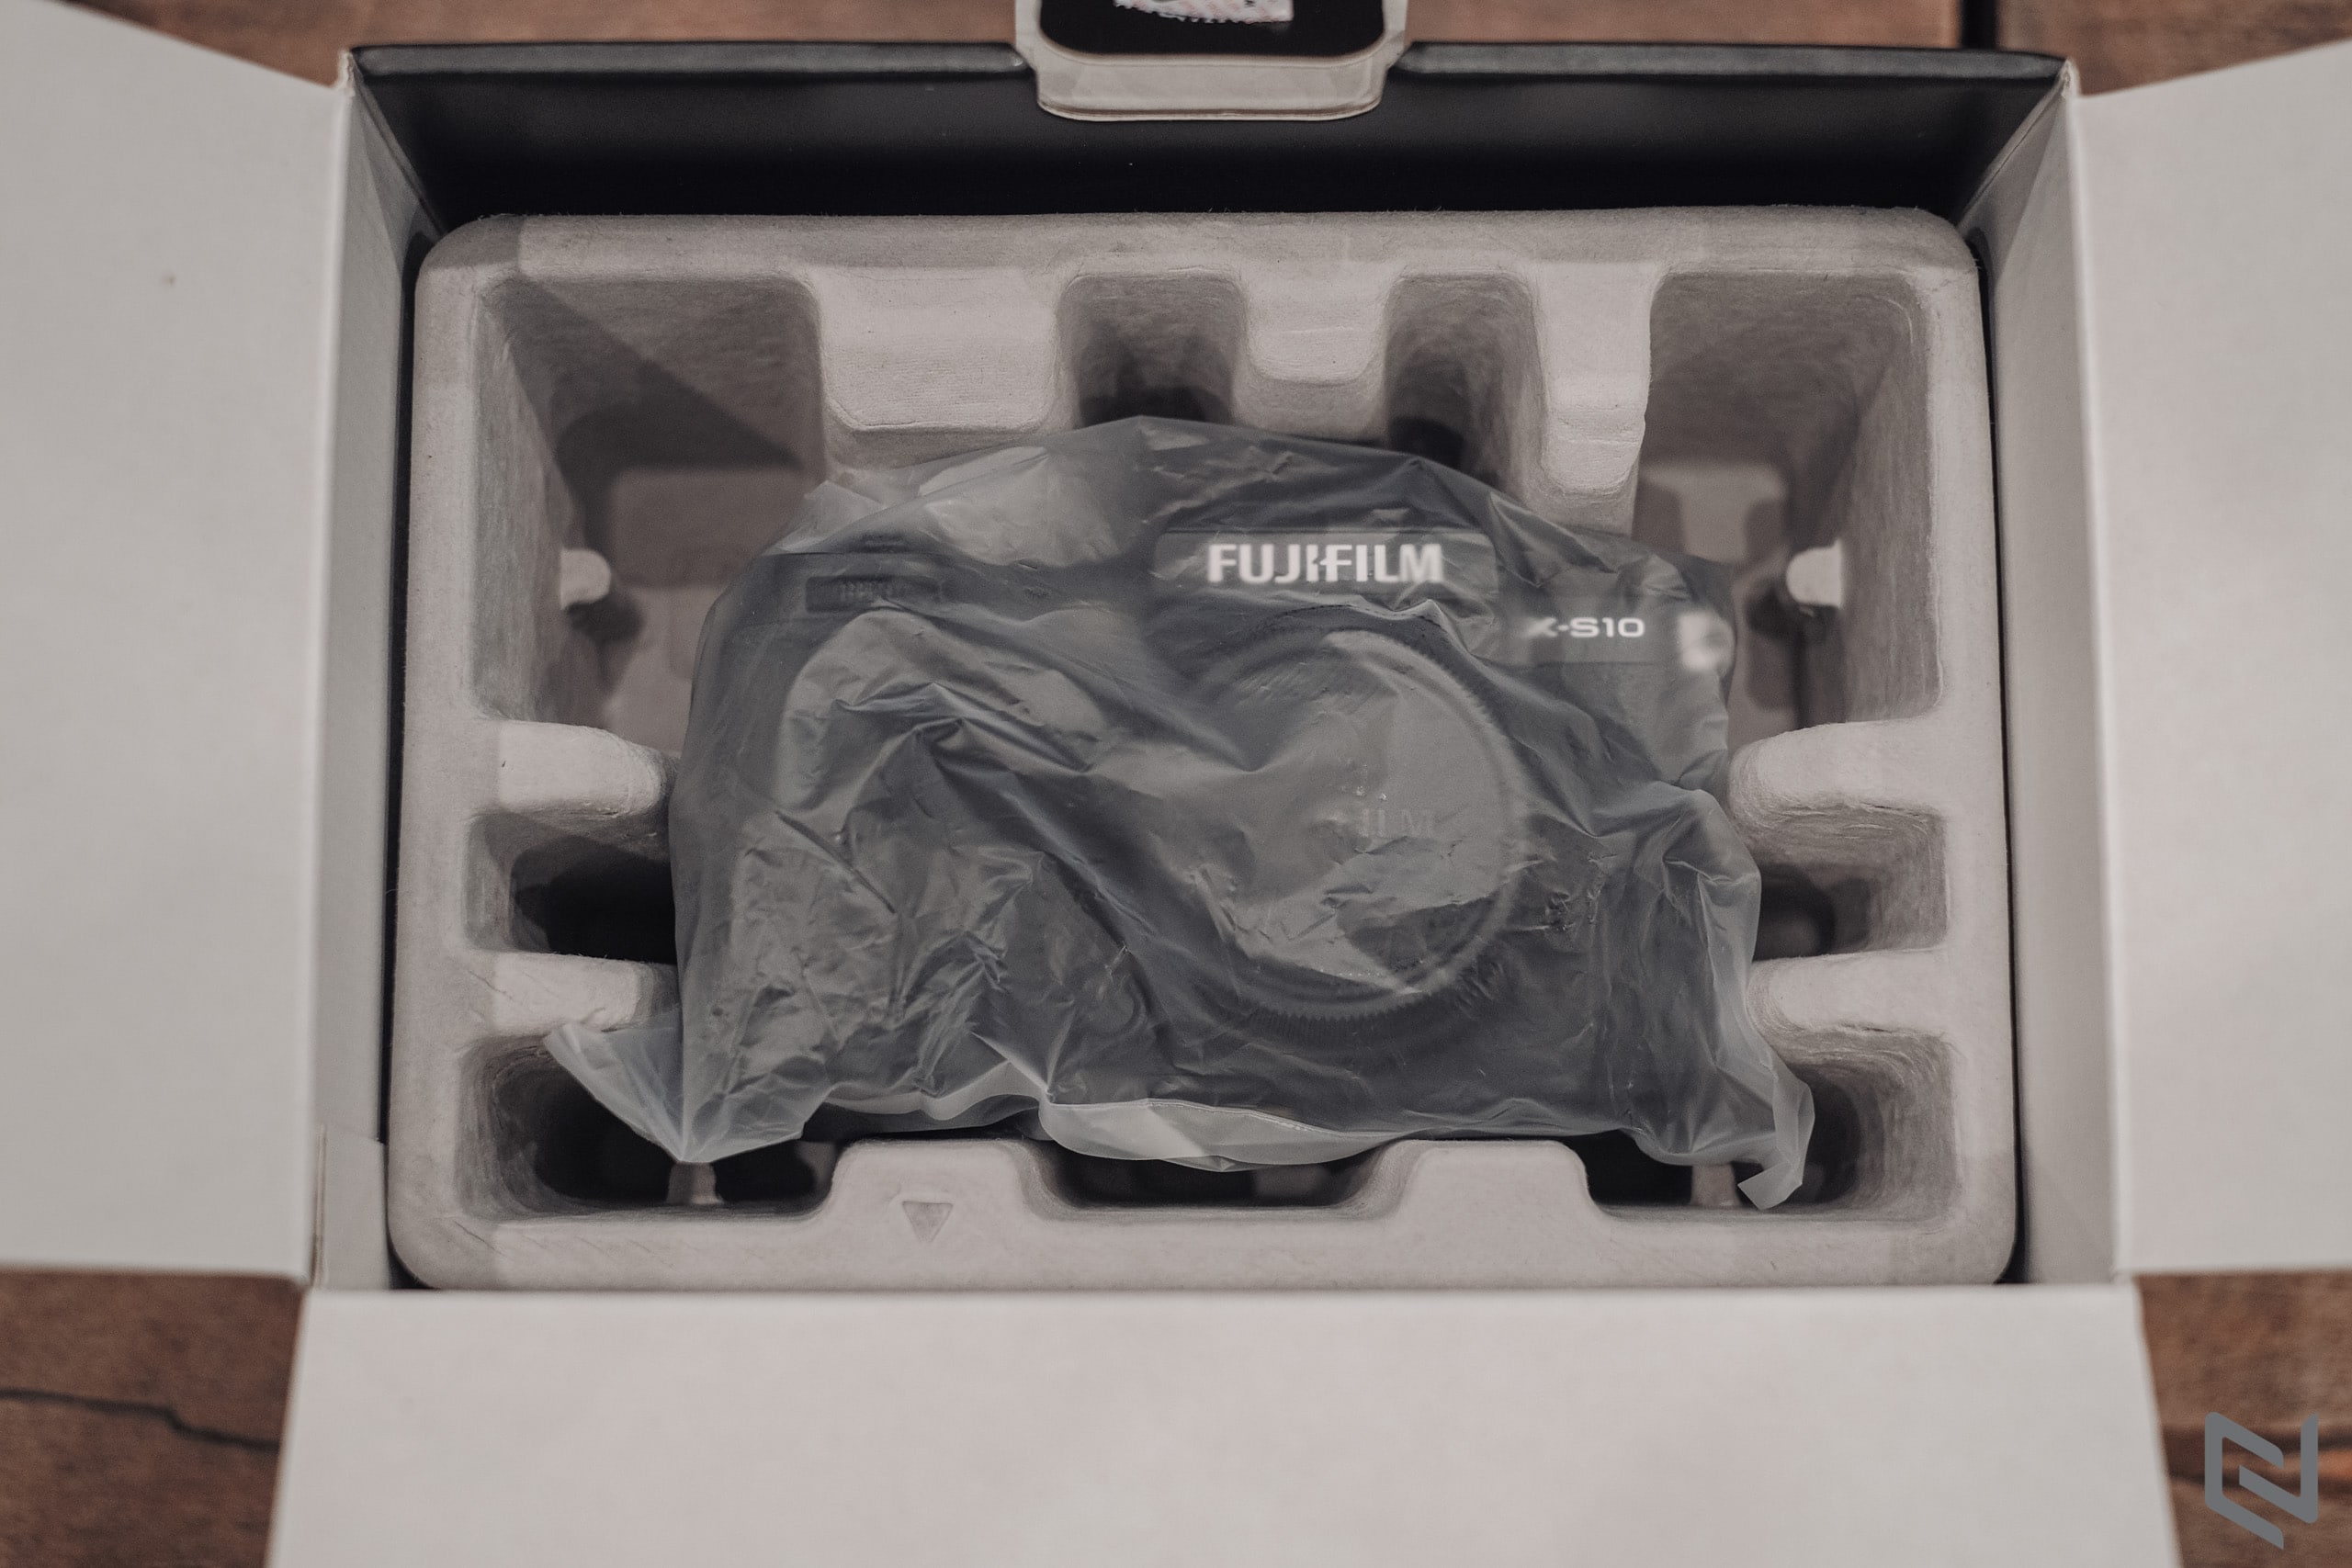 Mở hộp Fujifilm X-S10, đây là đam mê mới của mình!